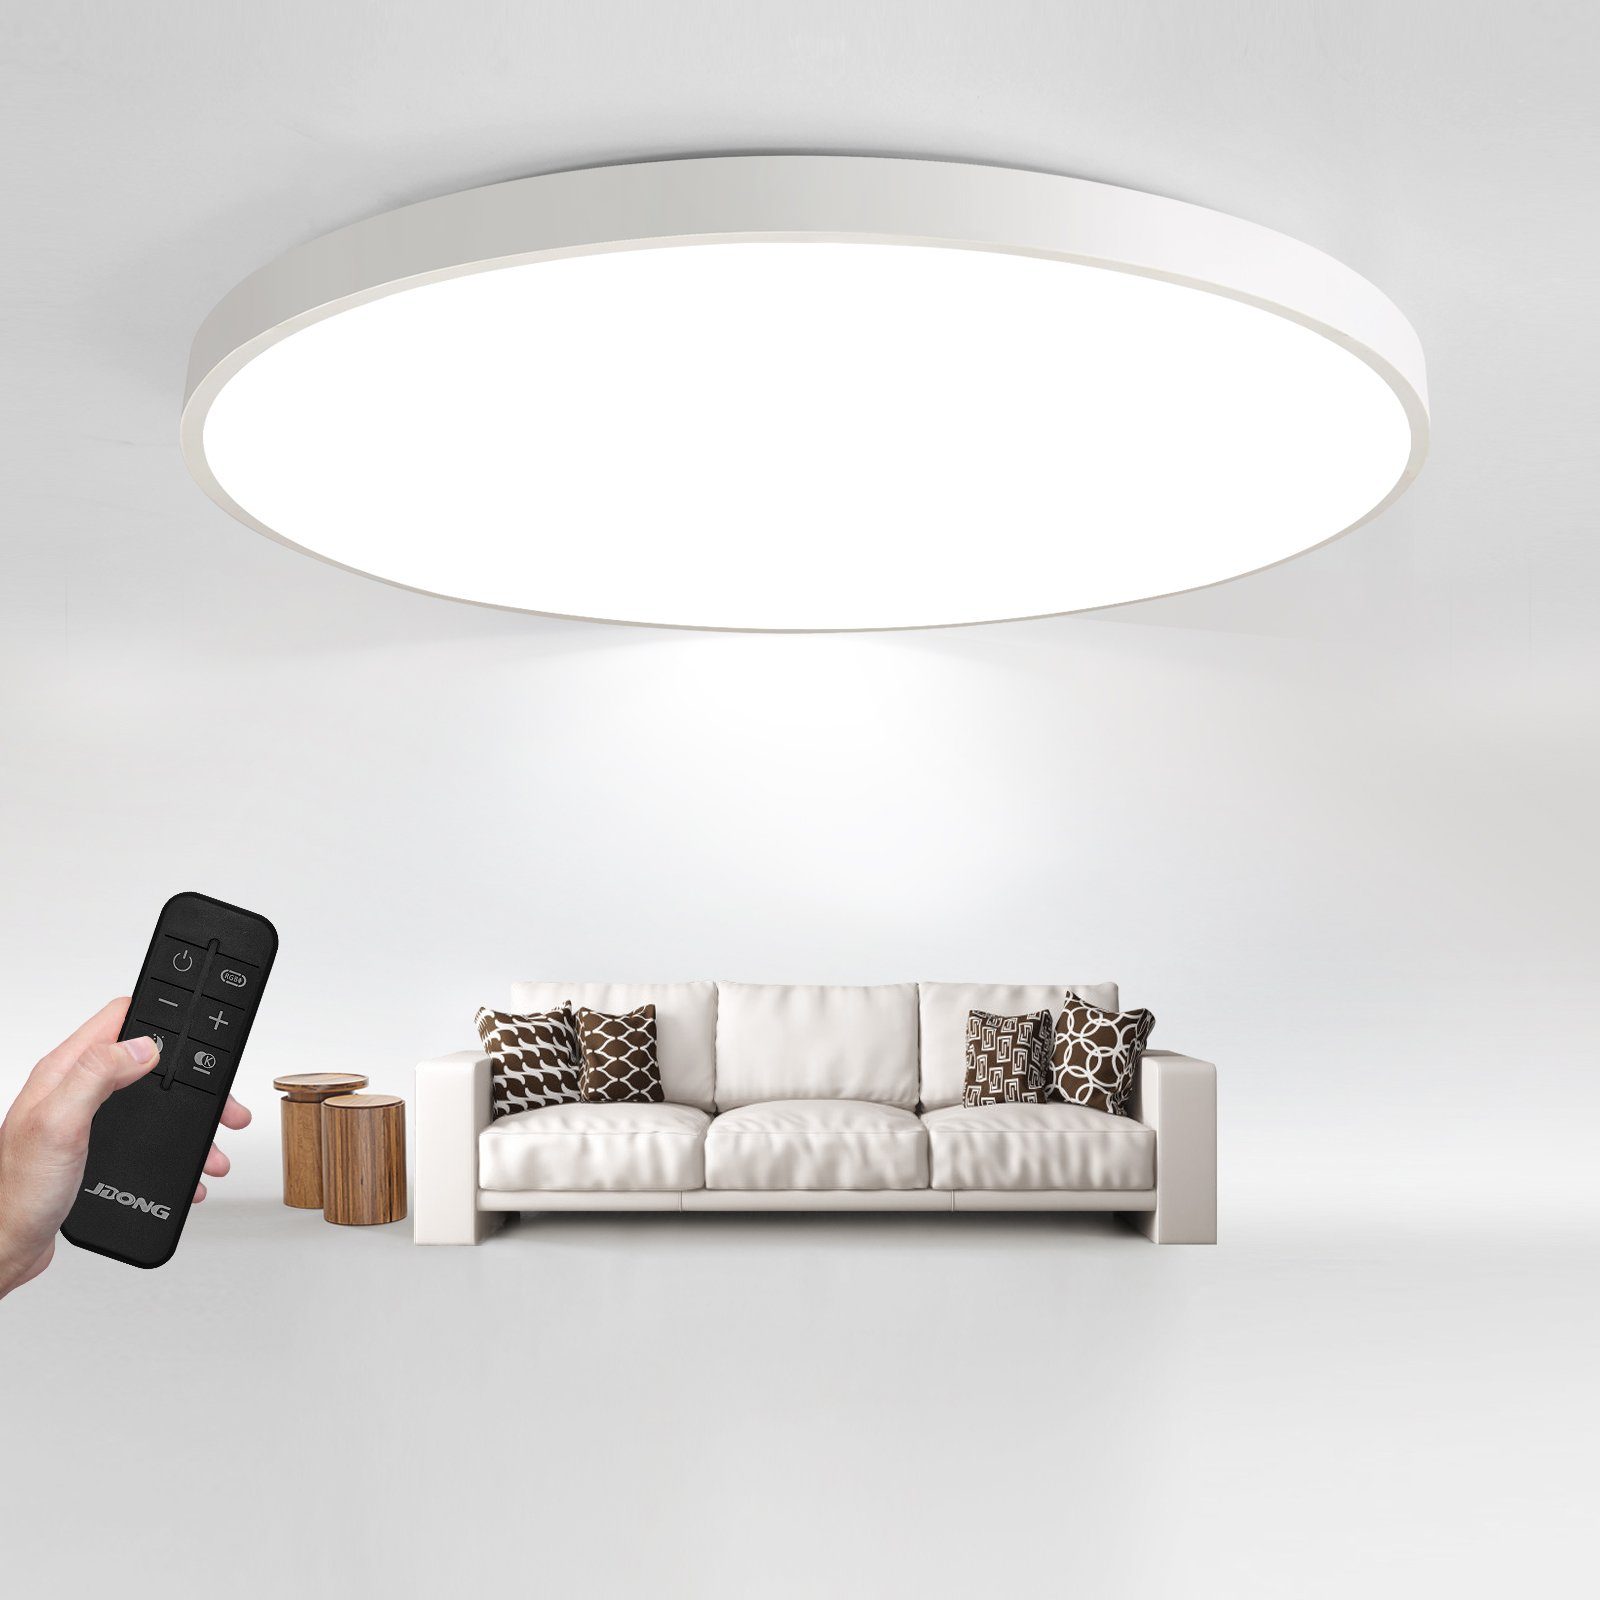 JDONG LED Deckenleuchte groß Deckenlampe Wohnzimmer 72W Dimmbar Durchmesser 58CM Rund, LED fest integriert, stufenlos dimmbar, Nachtlichtfunktion, Ultradünne 5CM Wohnzimmer